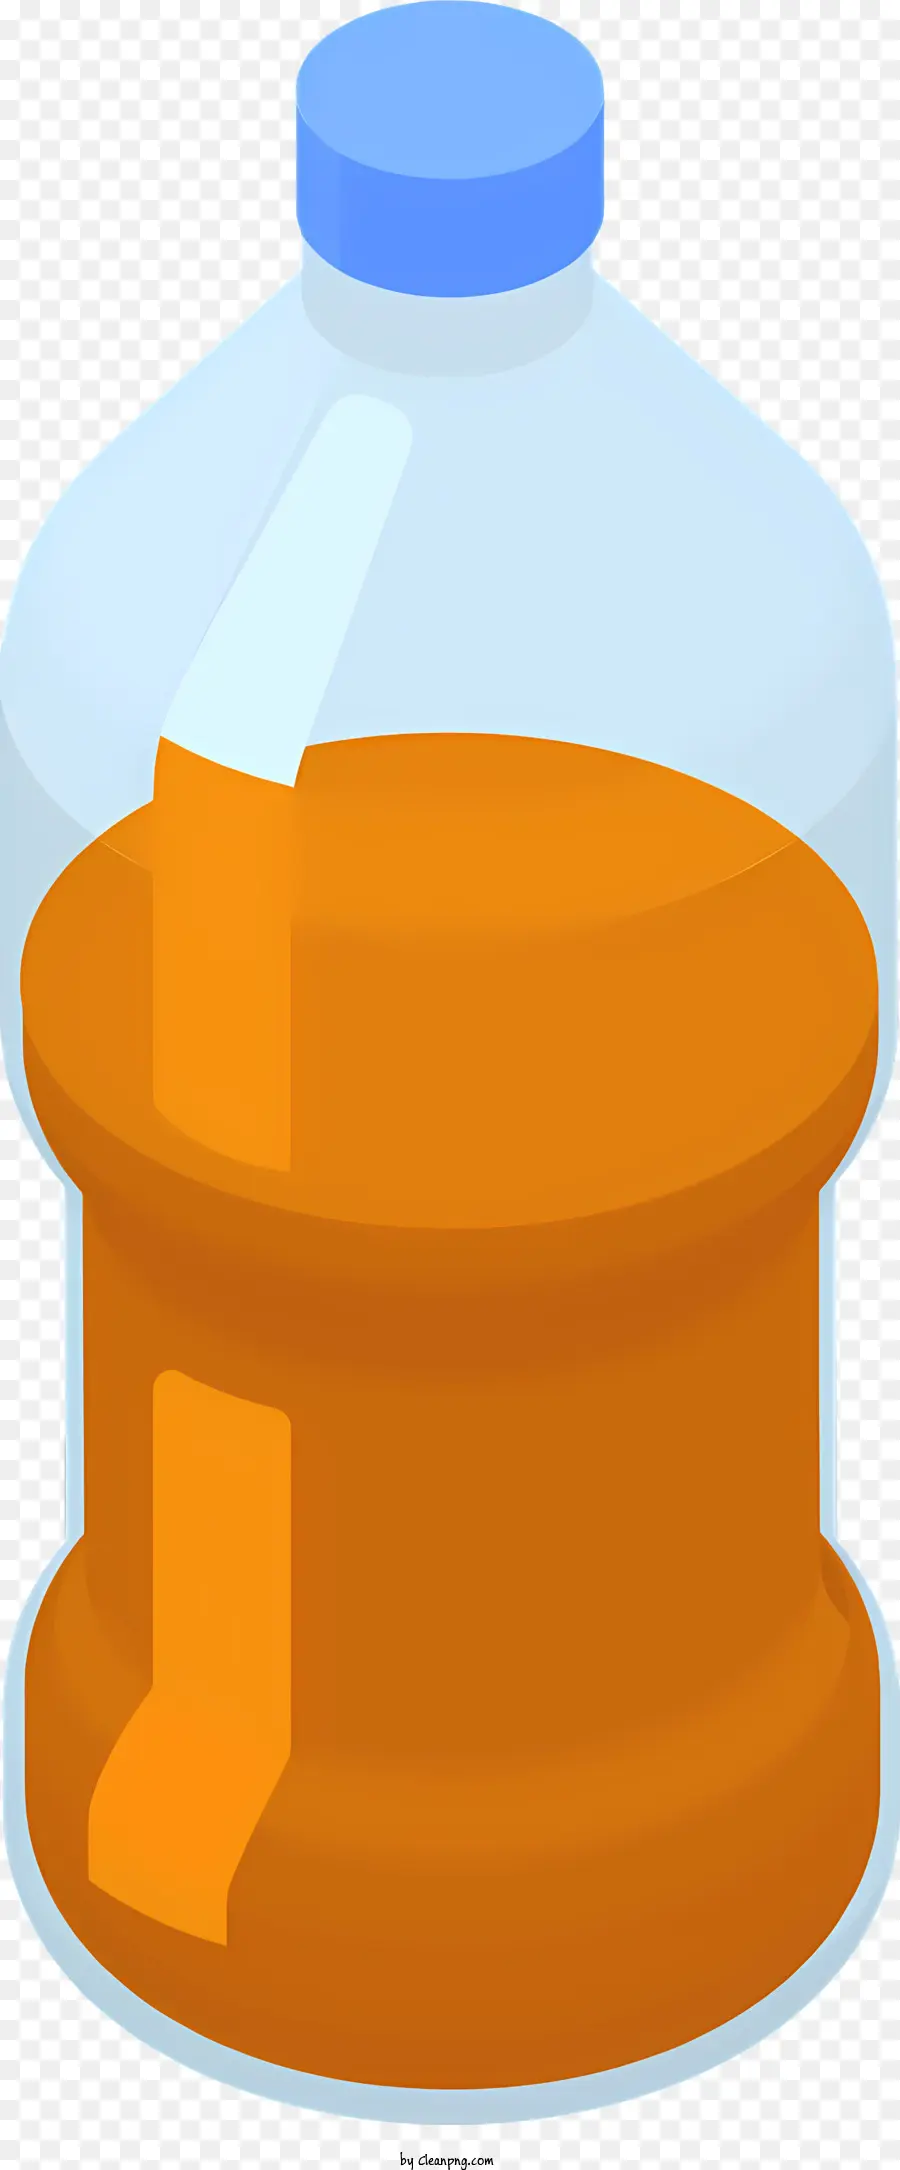 ICON -Kunststoffbehälter klares Kunststoff weißer Kunststoffflüssigkeitsbehälter - Plastikbehälter für Orangensaft mit Griff